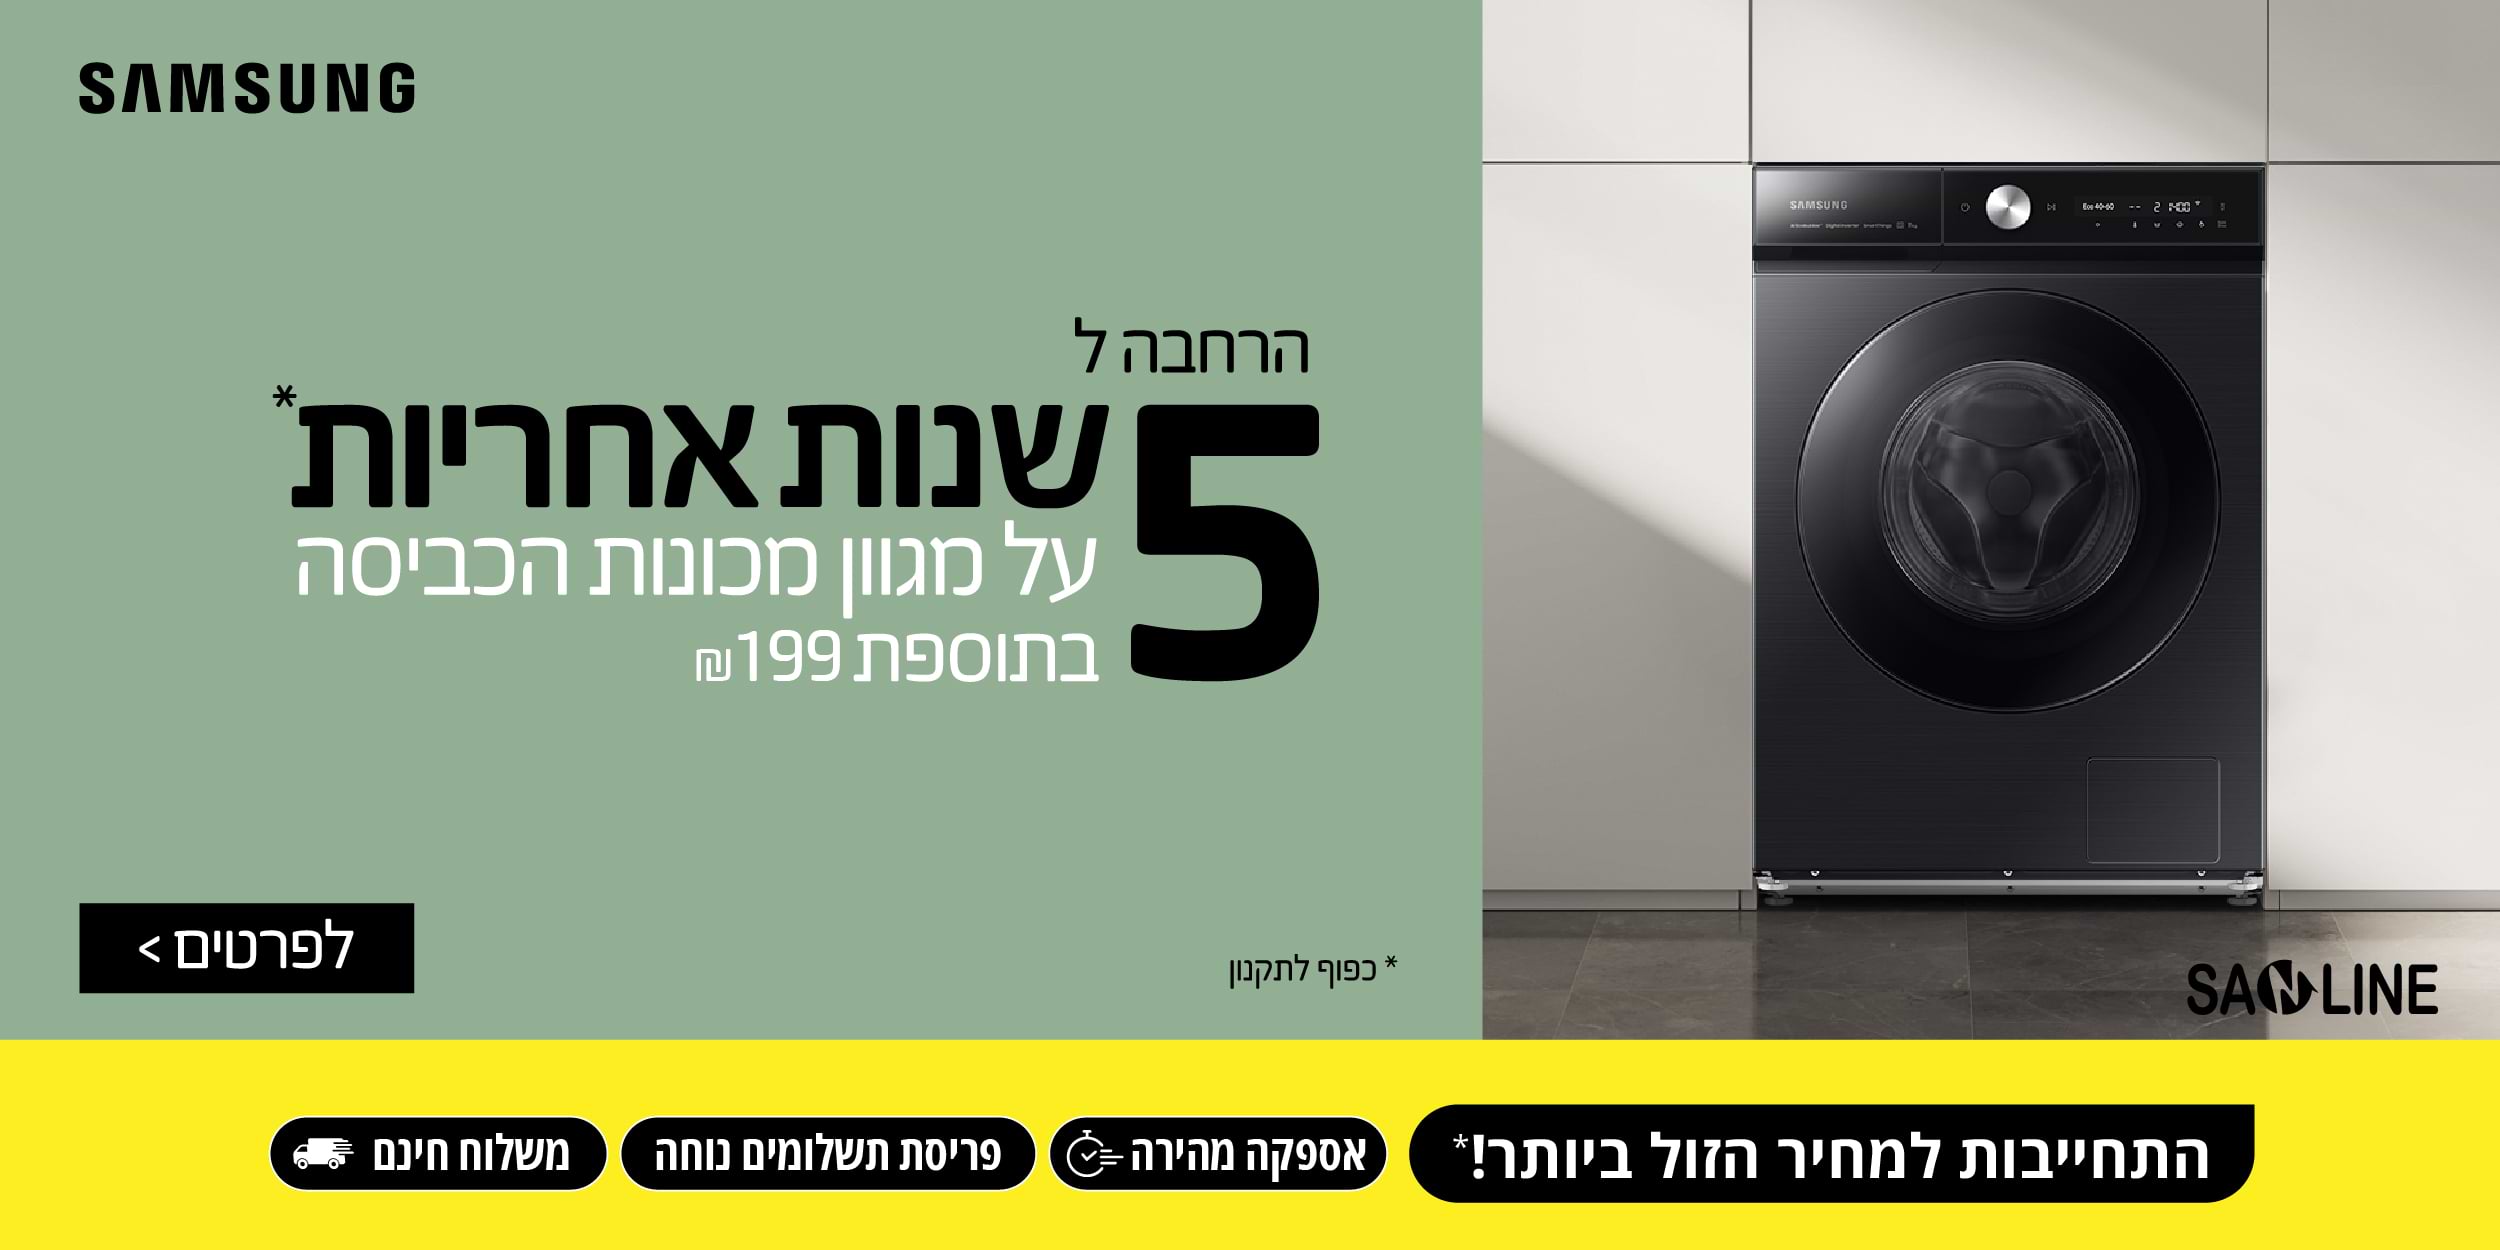 SAMSUNG הרחבה ל 5 שנות אחריות על מגוון מכונות הכביסה בתוספת 199 ₪ בכפוף לתקנון . התחייבות למחיר הזול ביותר! אספקה מהירה, פריסת תשלומים נוחה ומשלוח חינם.